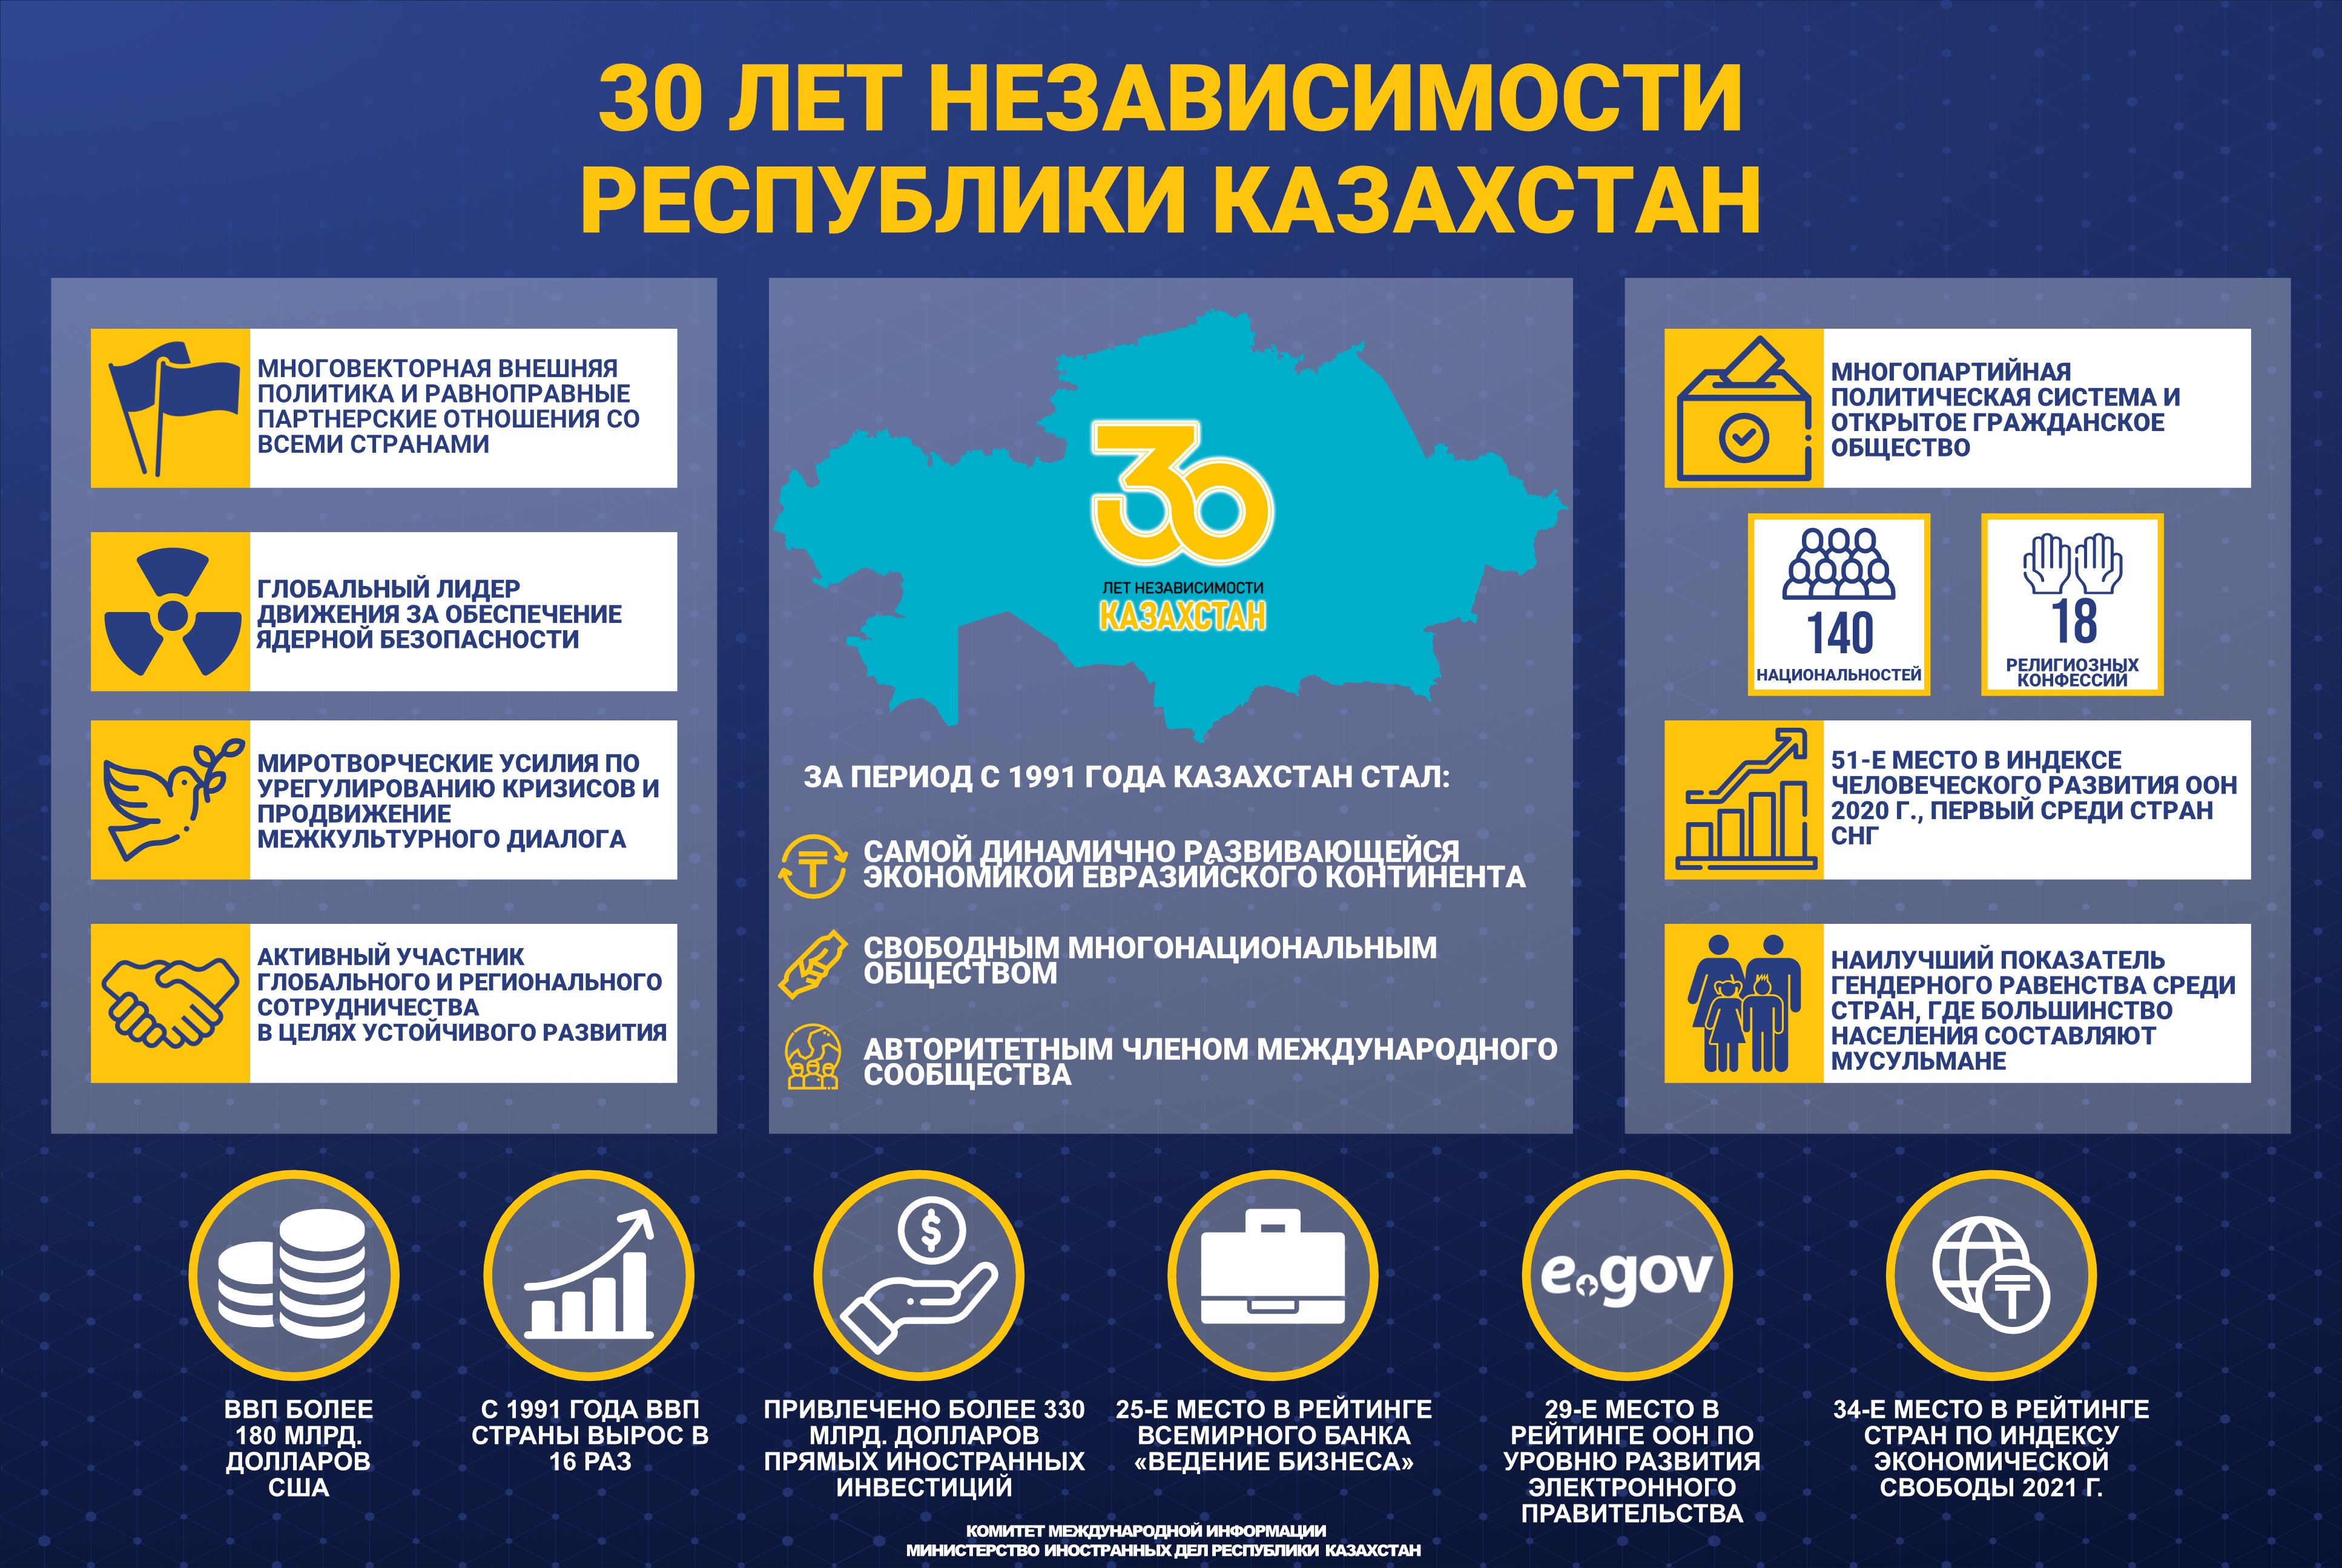 Об основных итогах развития Казахстана  за 30 лет независимости